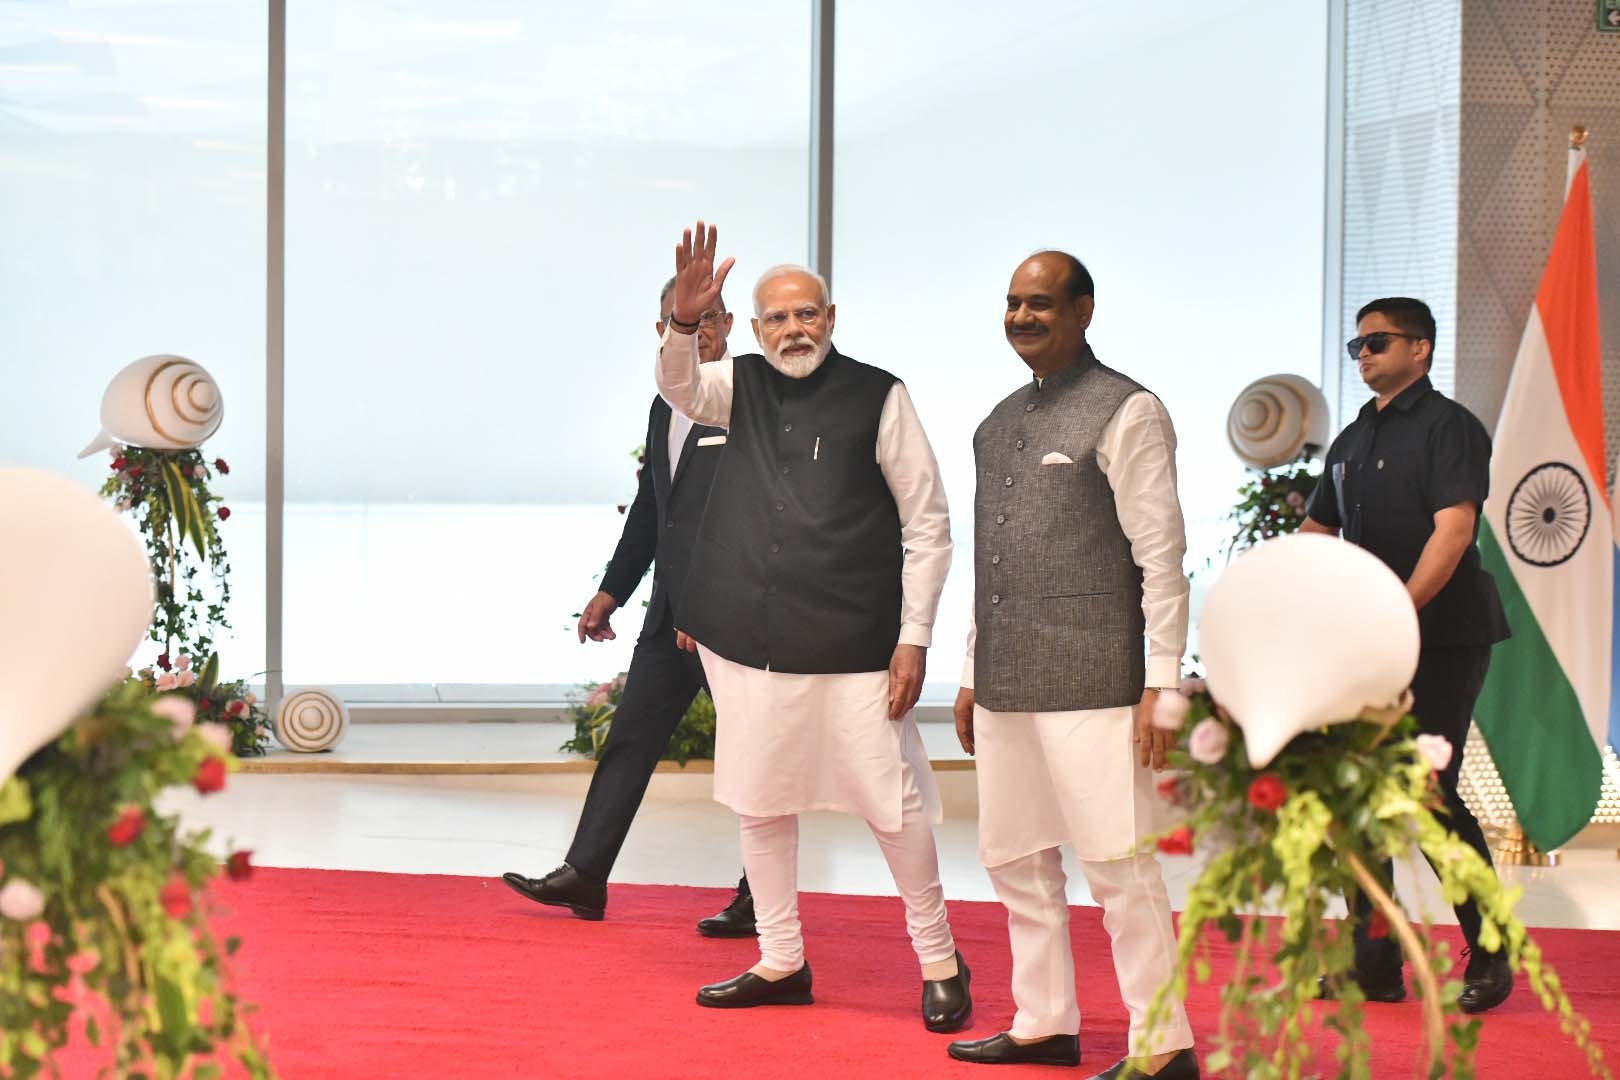 नई दिल्ली में शुक्रवार 13 अक्टूबर 2023 को प्रधानमंत्री नरेन्द्र मोदी ने यशोभूमि में 9वें जी 20 संसदीय अध्यक्षों के शिखर सम्मेलन पी20 के उद्घाटन के दौरान। हिन्दुस्थान समाचार फोटो गणेश बिष्ट 